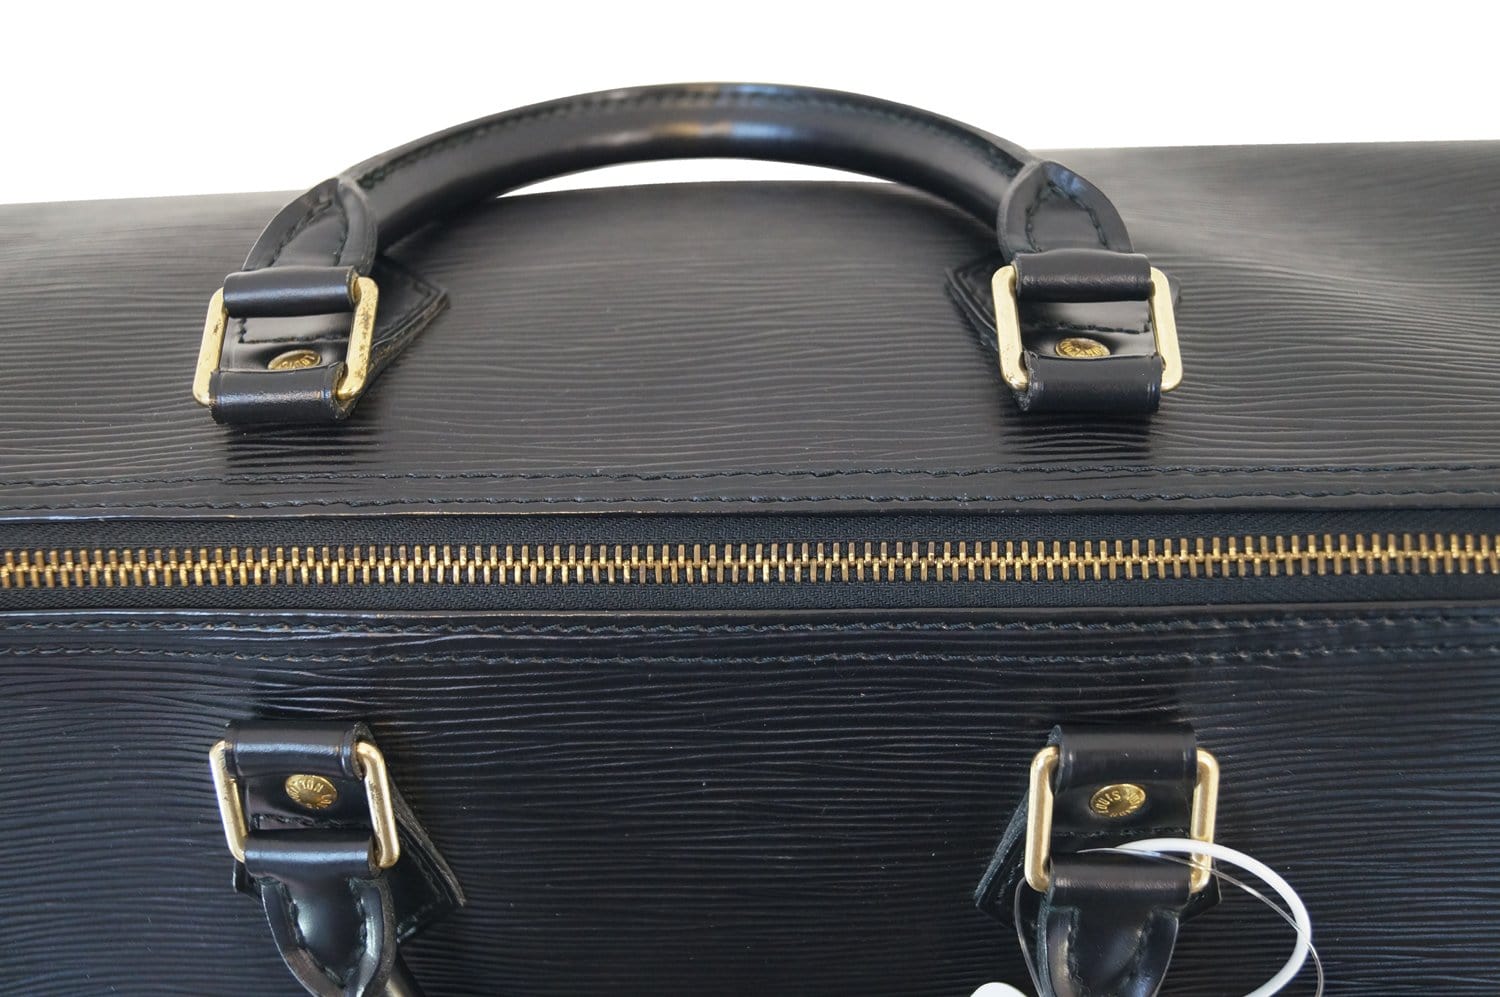 Louis Vuitton Epi Speedy 35 Black – Timeless Vintage Company